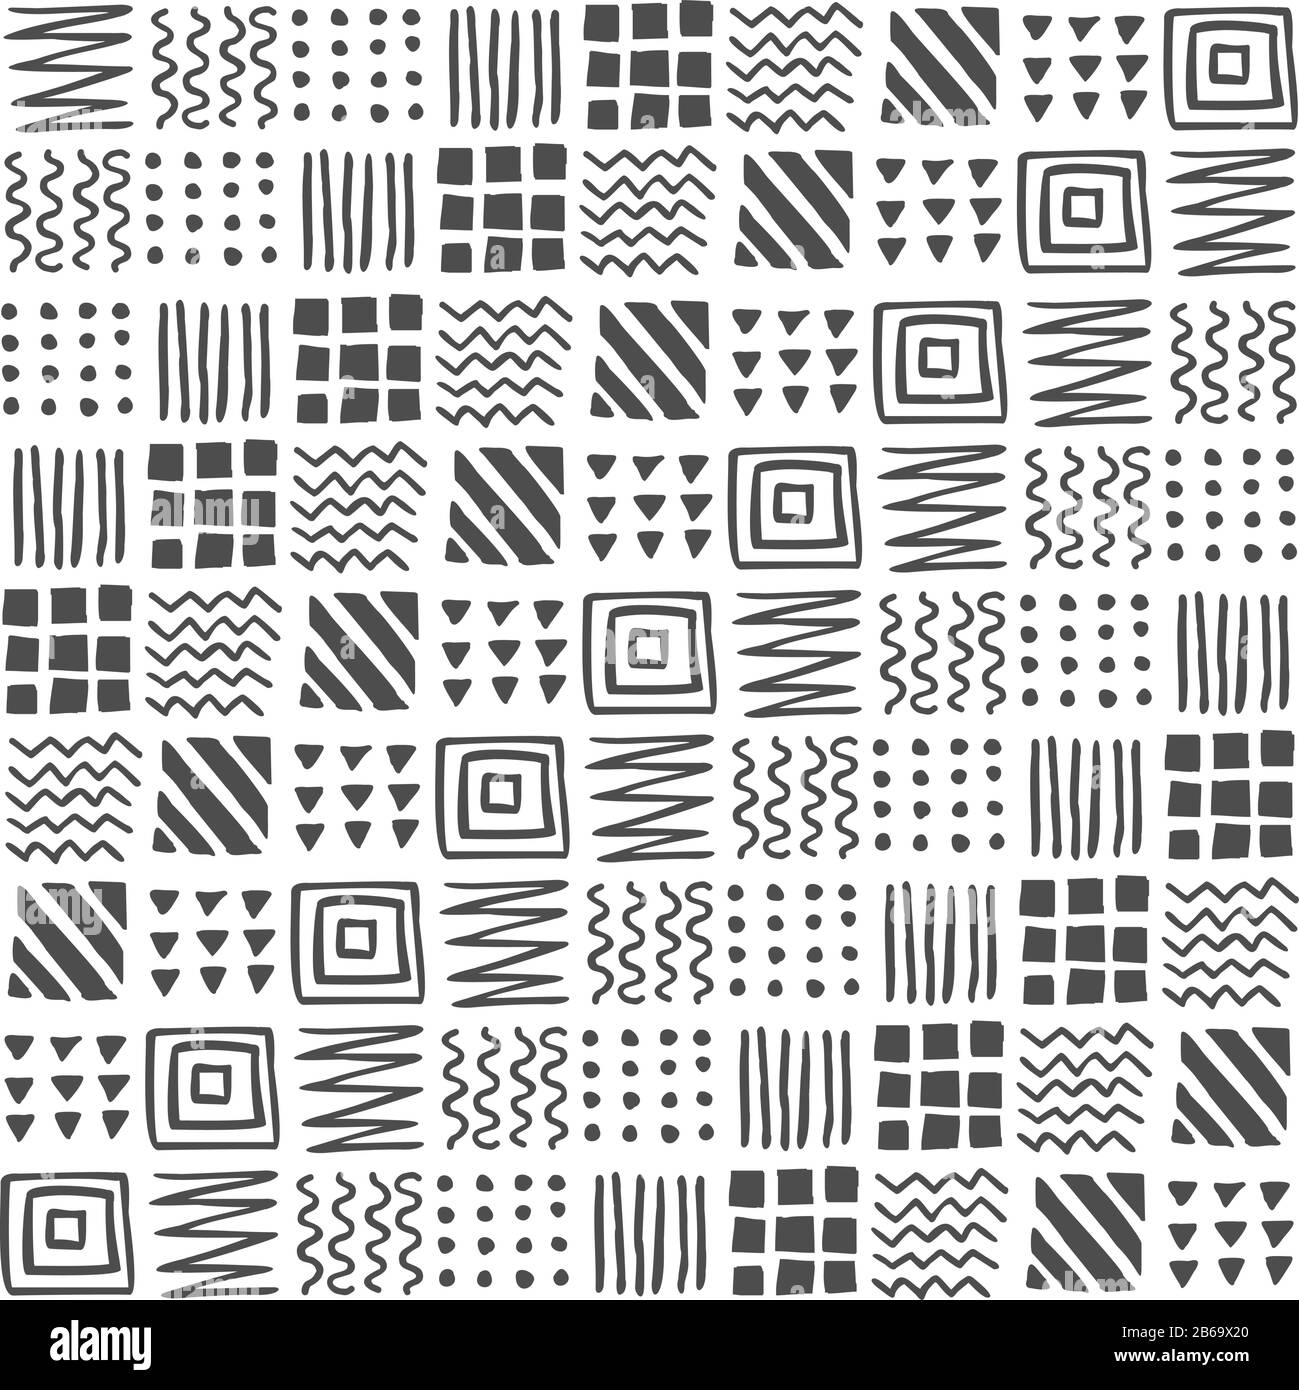 Vektor nahtloses geometrisches Muster aus Quadraten, Streifen, Linien, Wellen, Dreiecken, Punkten, Zickzacken, handgezeichnet. Ethnisches dunkelgraues Muster auf einem weißen Backgrot Stock Vektor